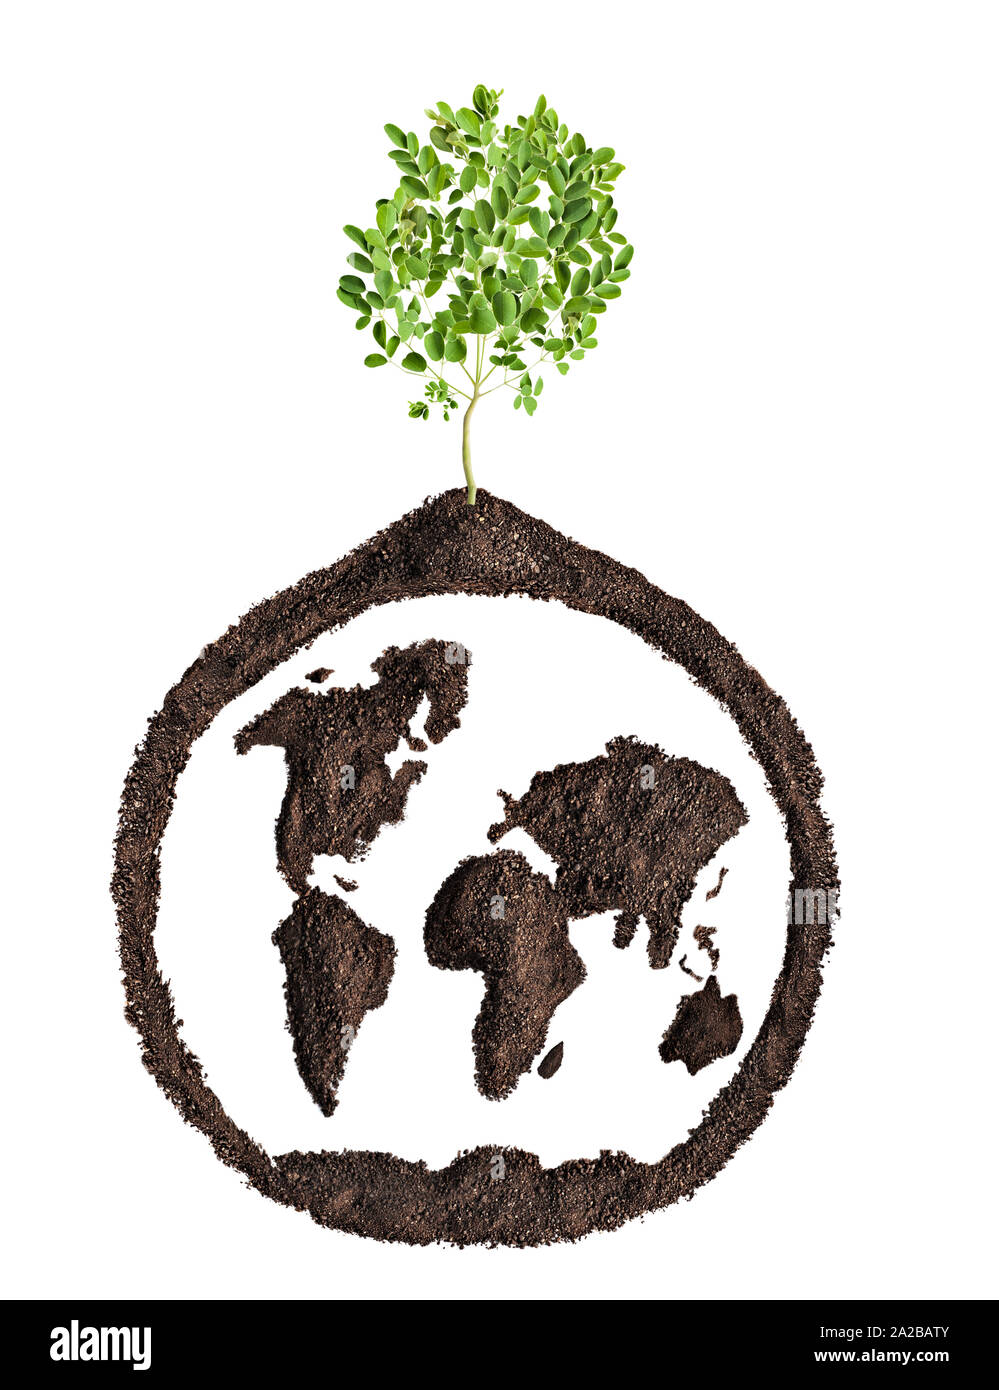 Konzeptionelle Weltkarte Recycling oder Landwirtschaft, wächst ein Baum Stockfoto